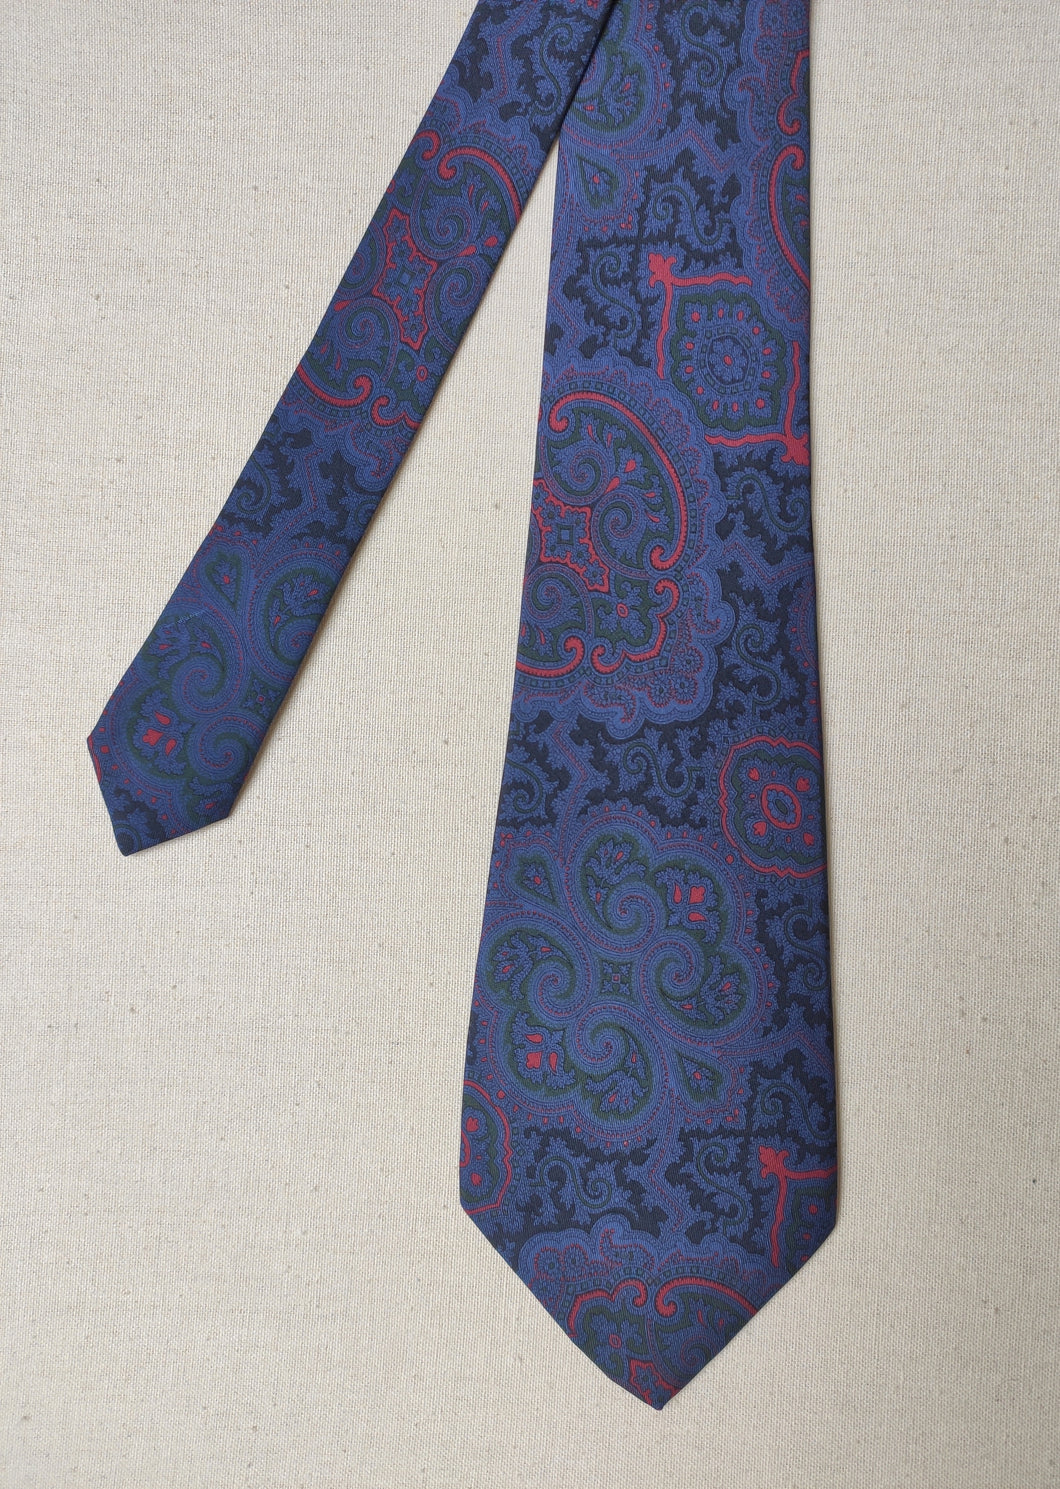 Adriano Cifonelli cravate vintage en soie à motif floral